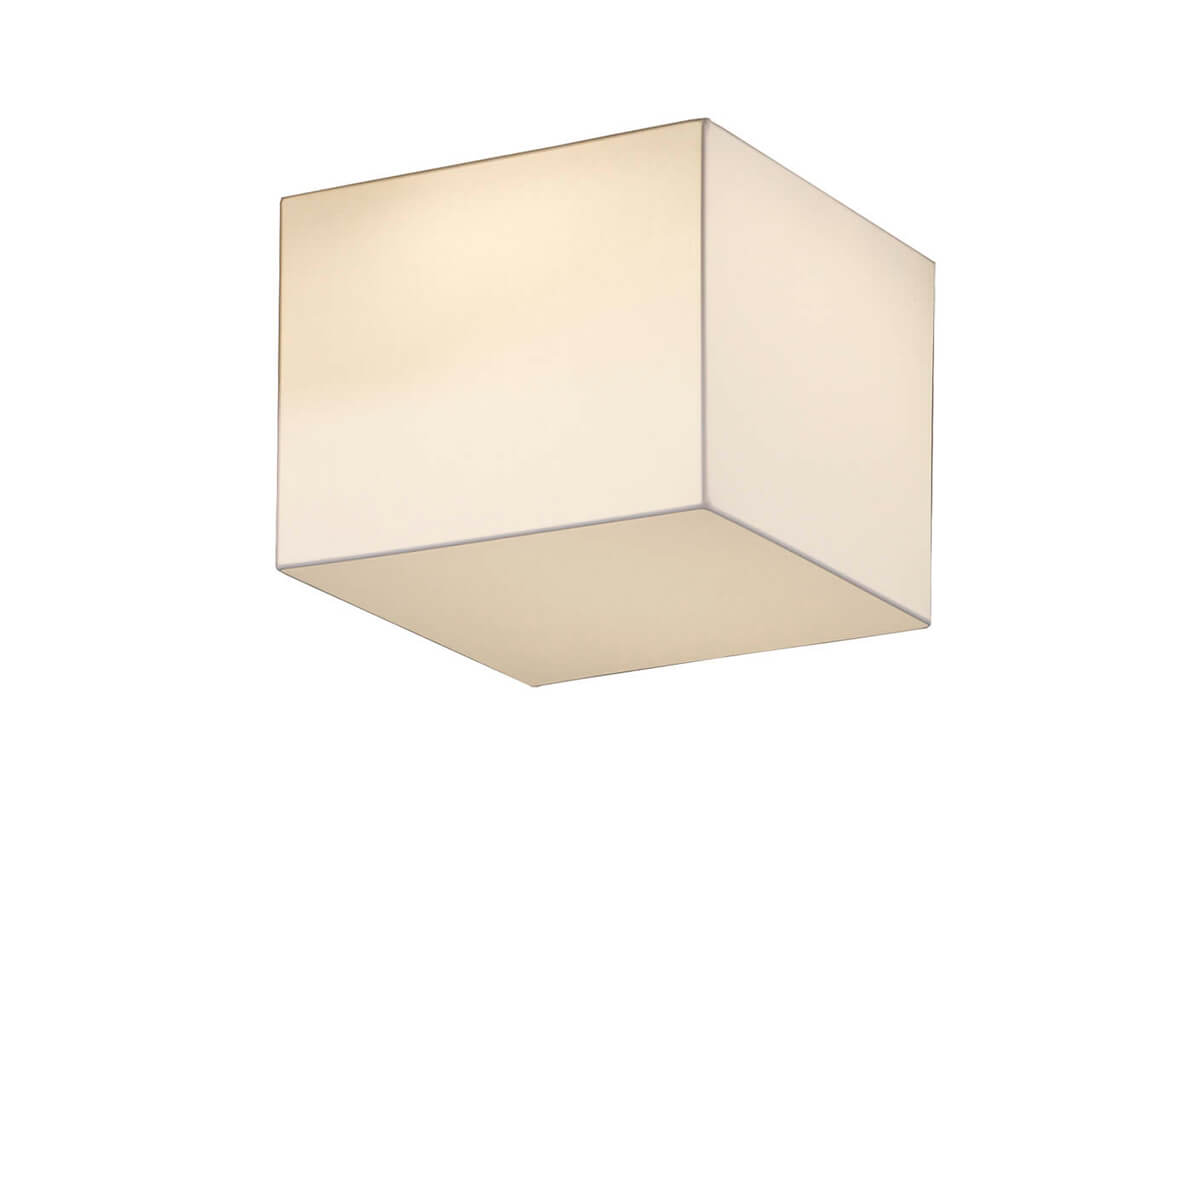 BLOCK - Ceiling lamp 50 cm